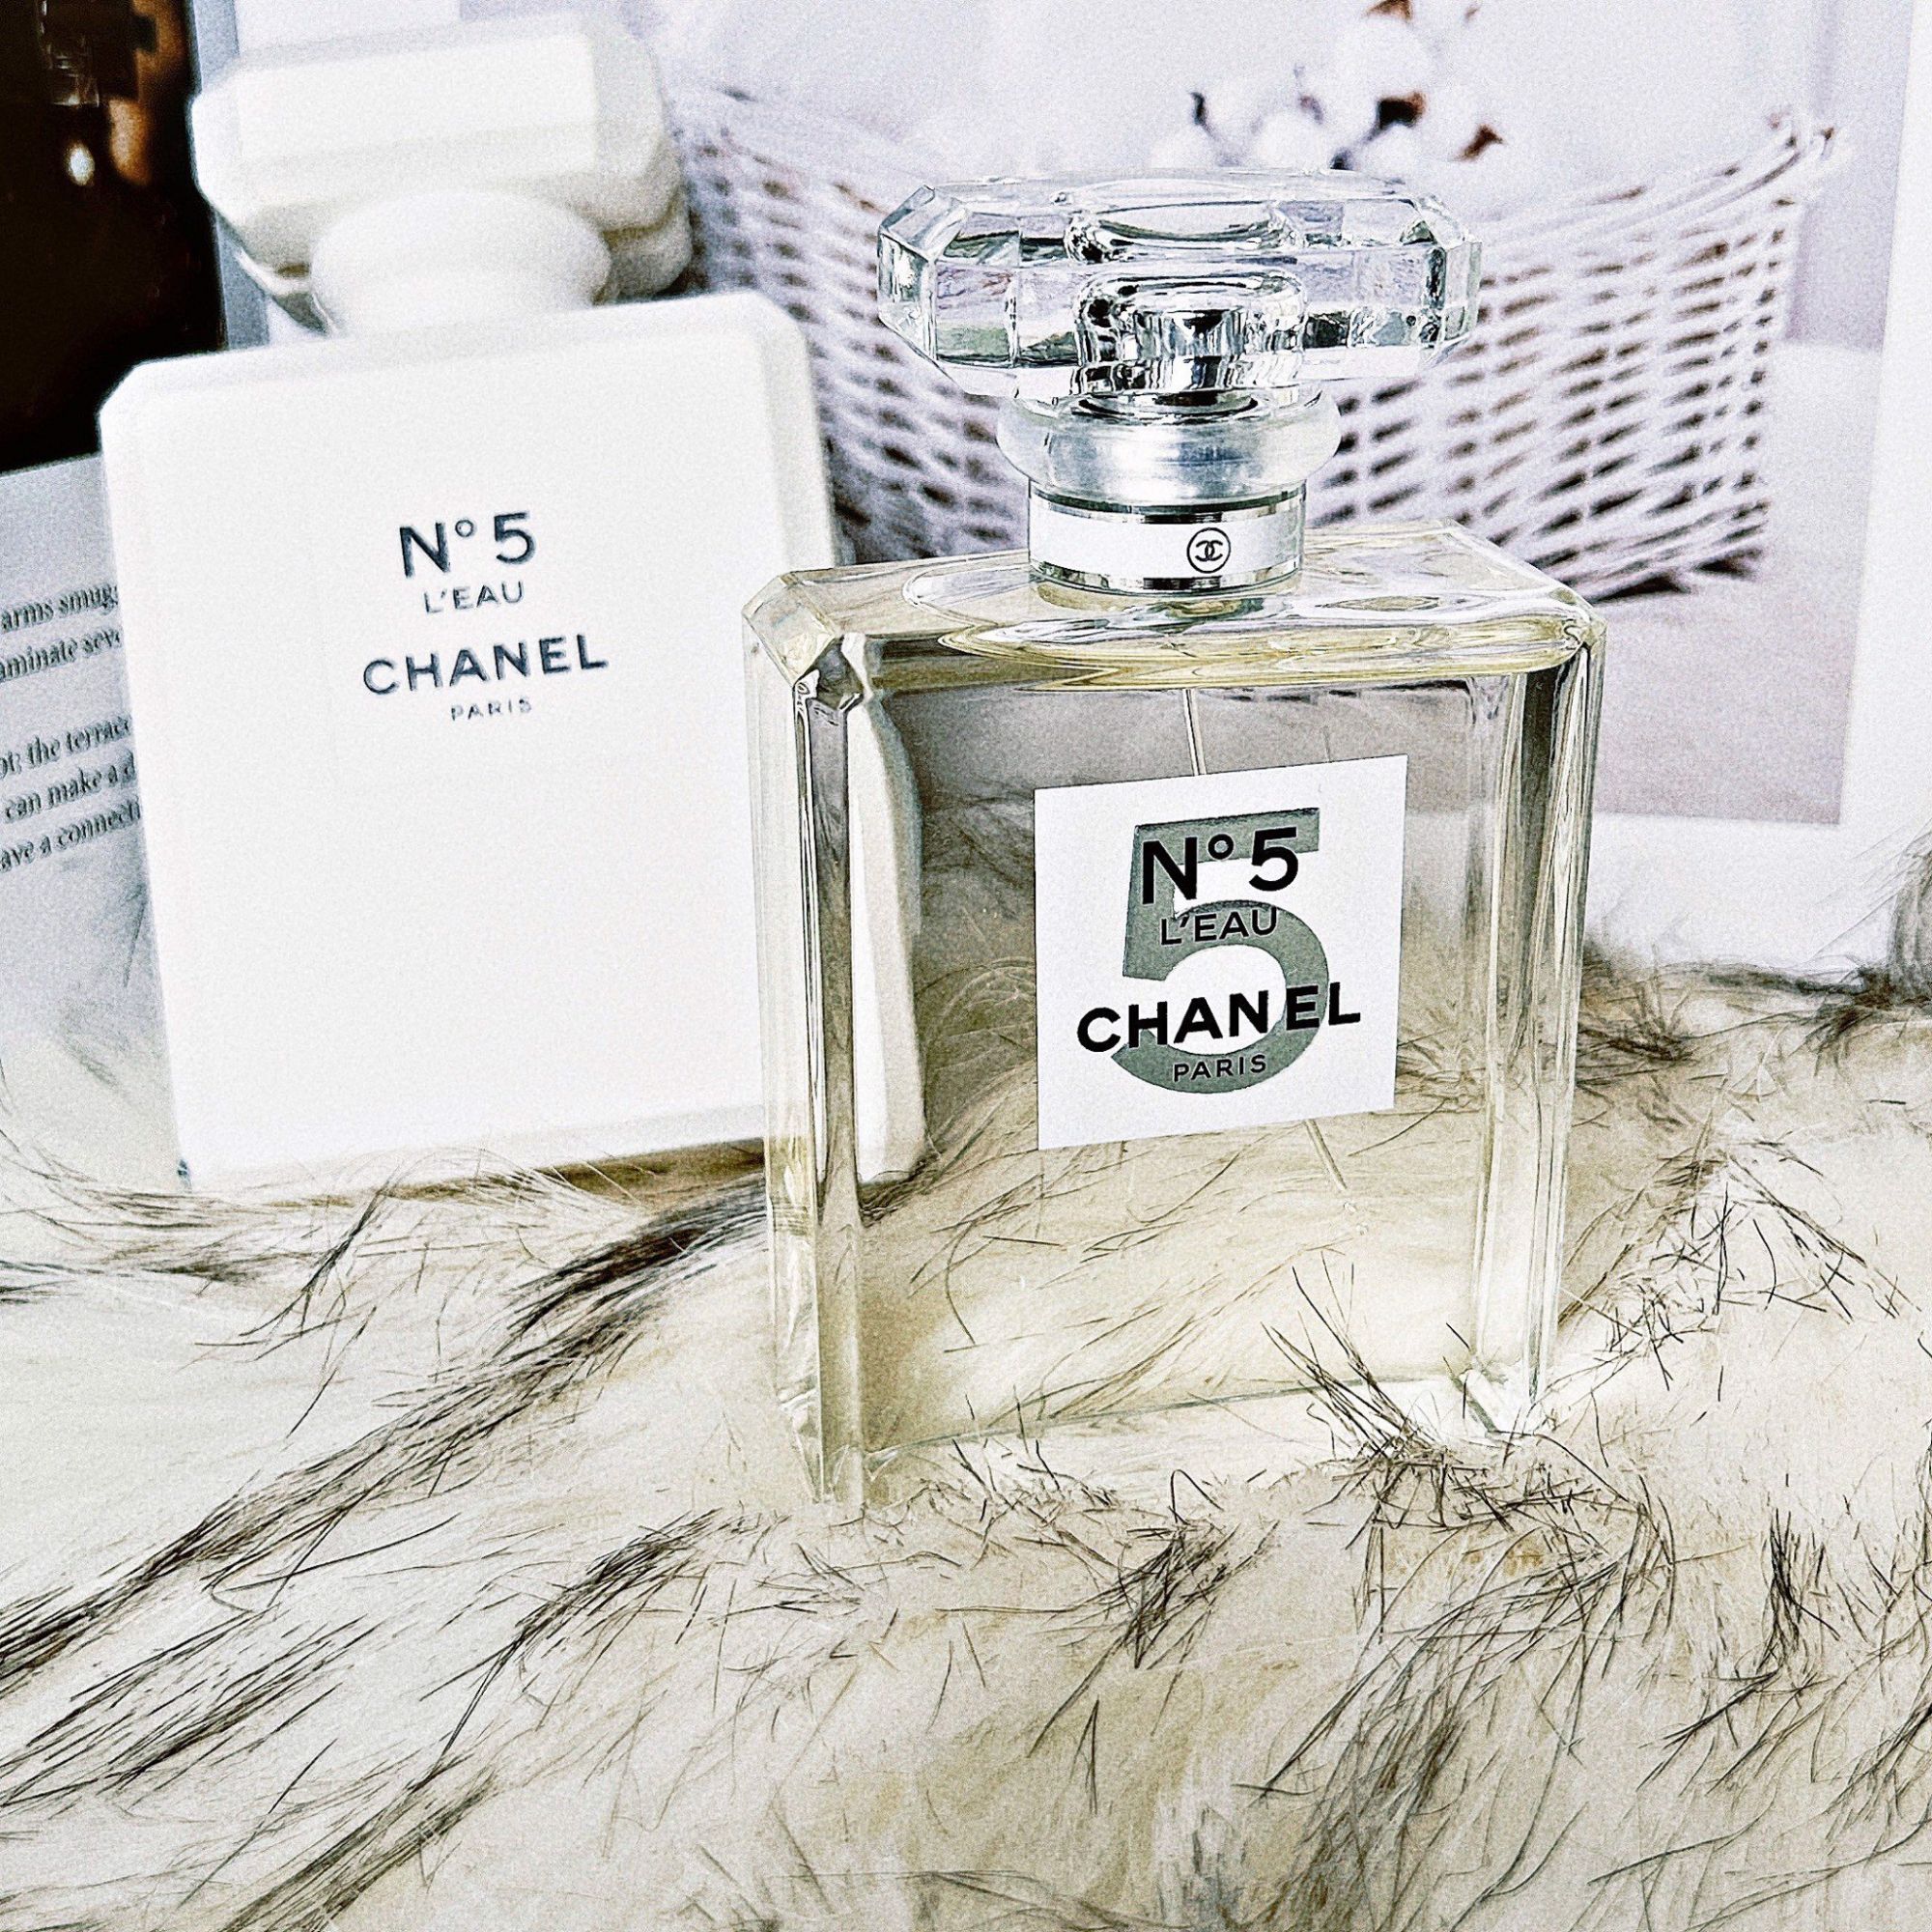 Nước hoa Chanel Coco Noir mẫu thử 10ml  Yến Paris Store